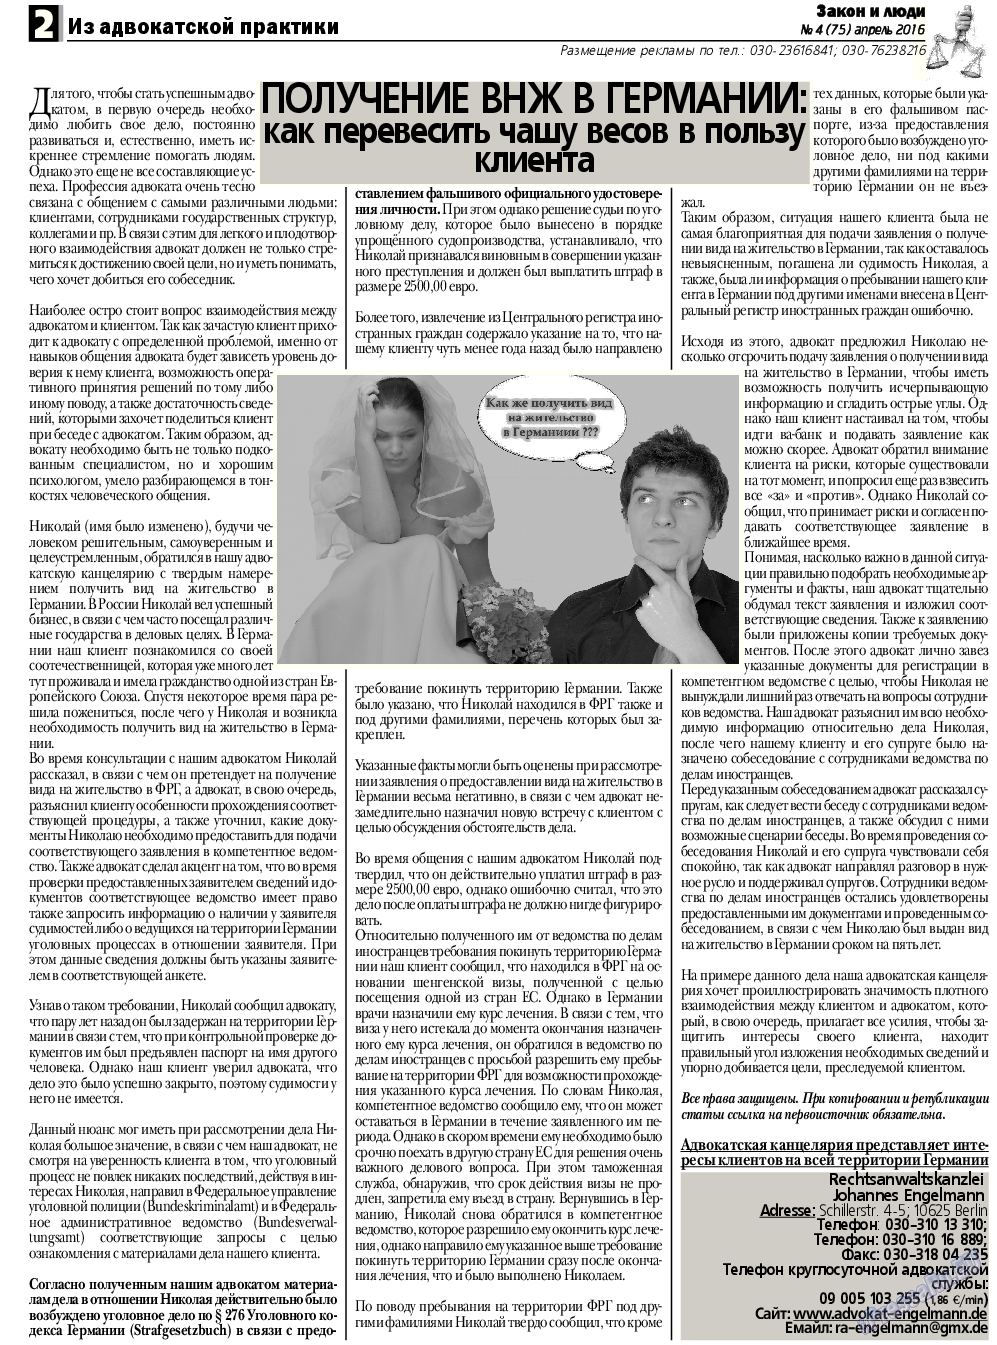 Закон и люди, газета. 2016 №4 стр.2